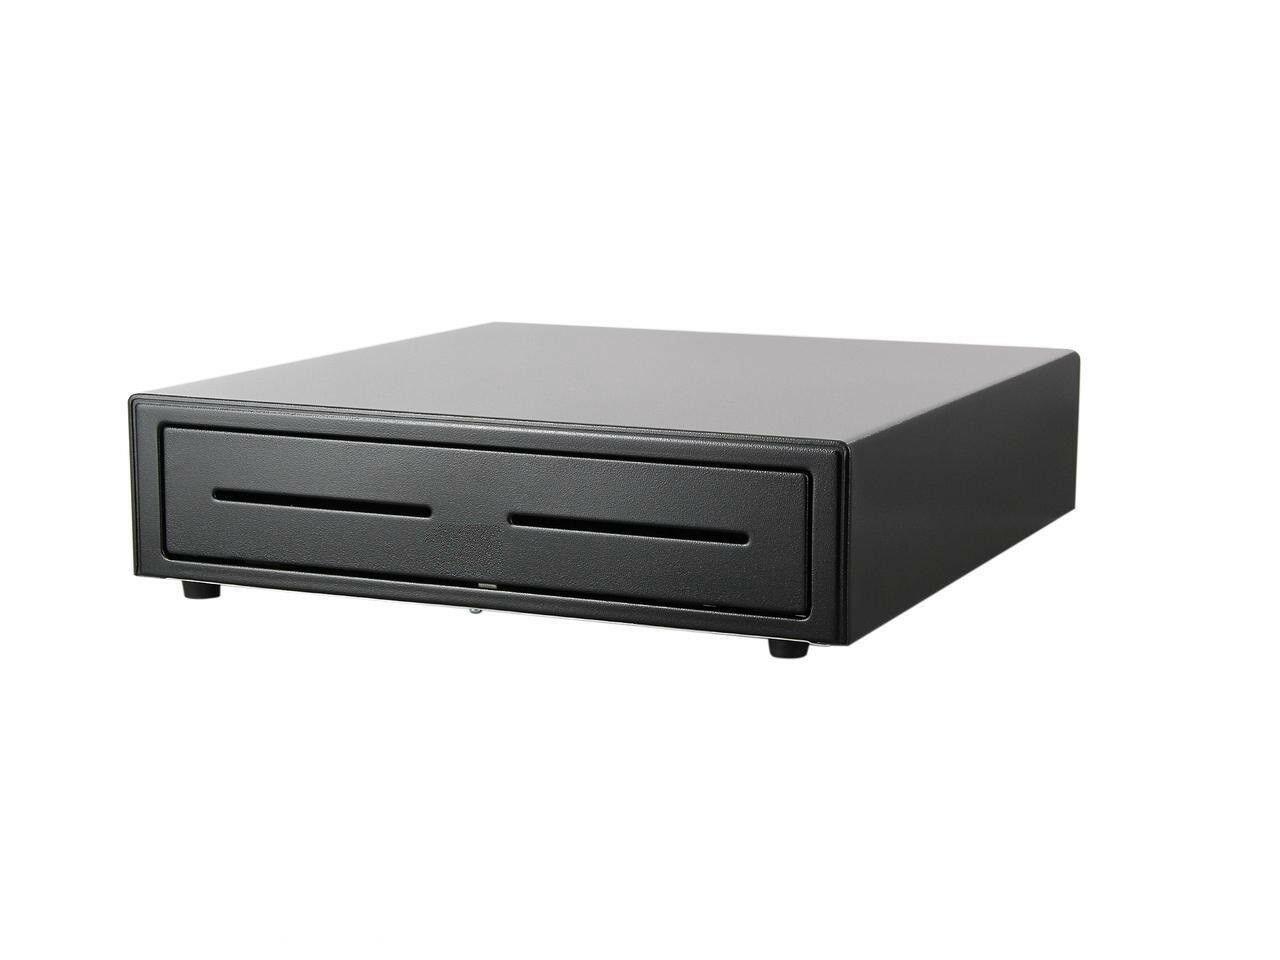 Pokladní zásuvka USB POS Cash Drawer APG Vasario Model VB400-BL1616